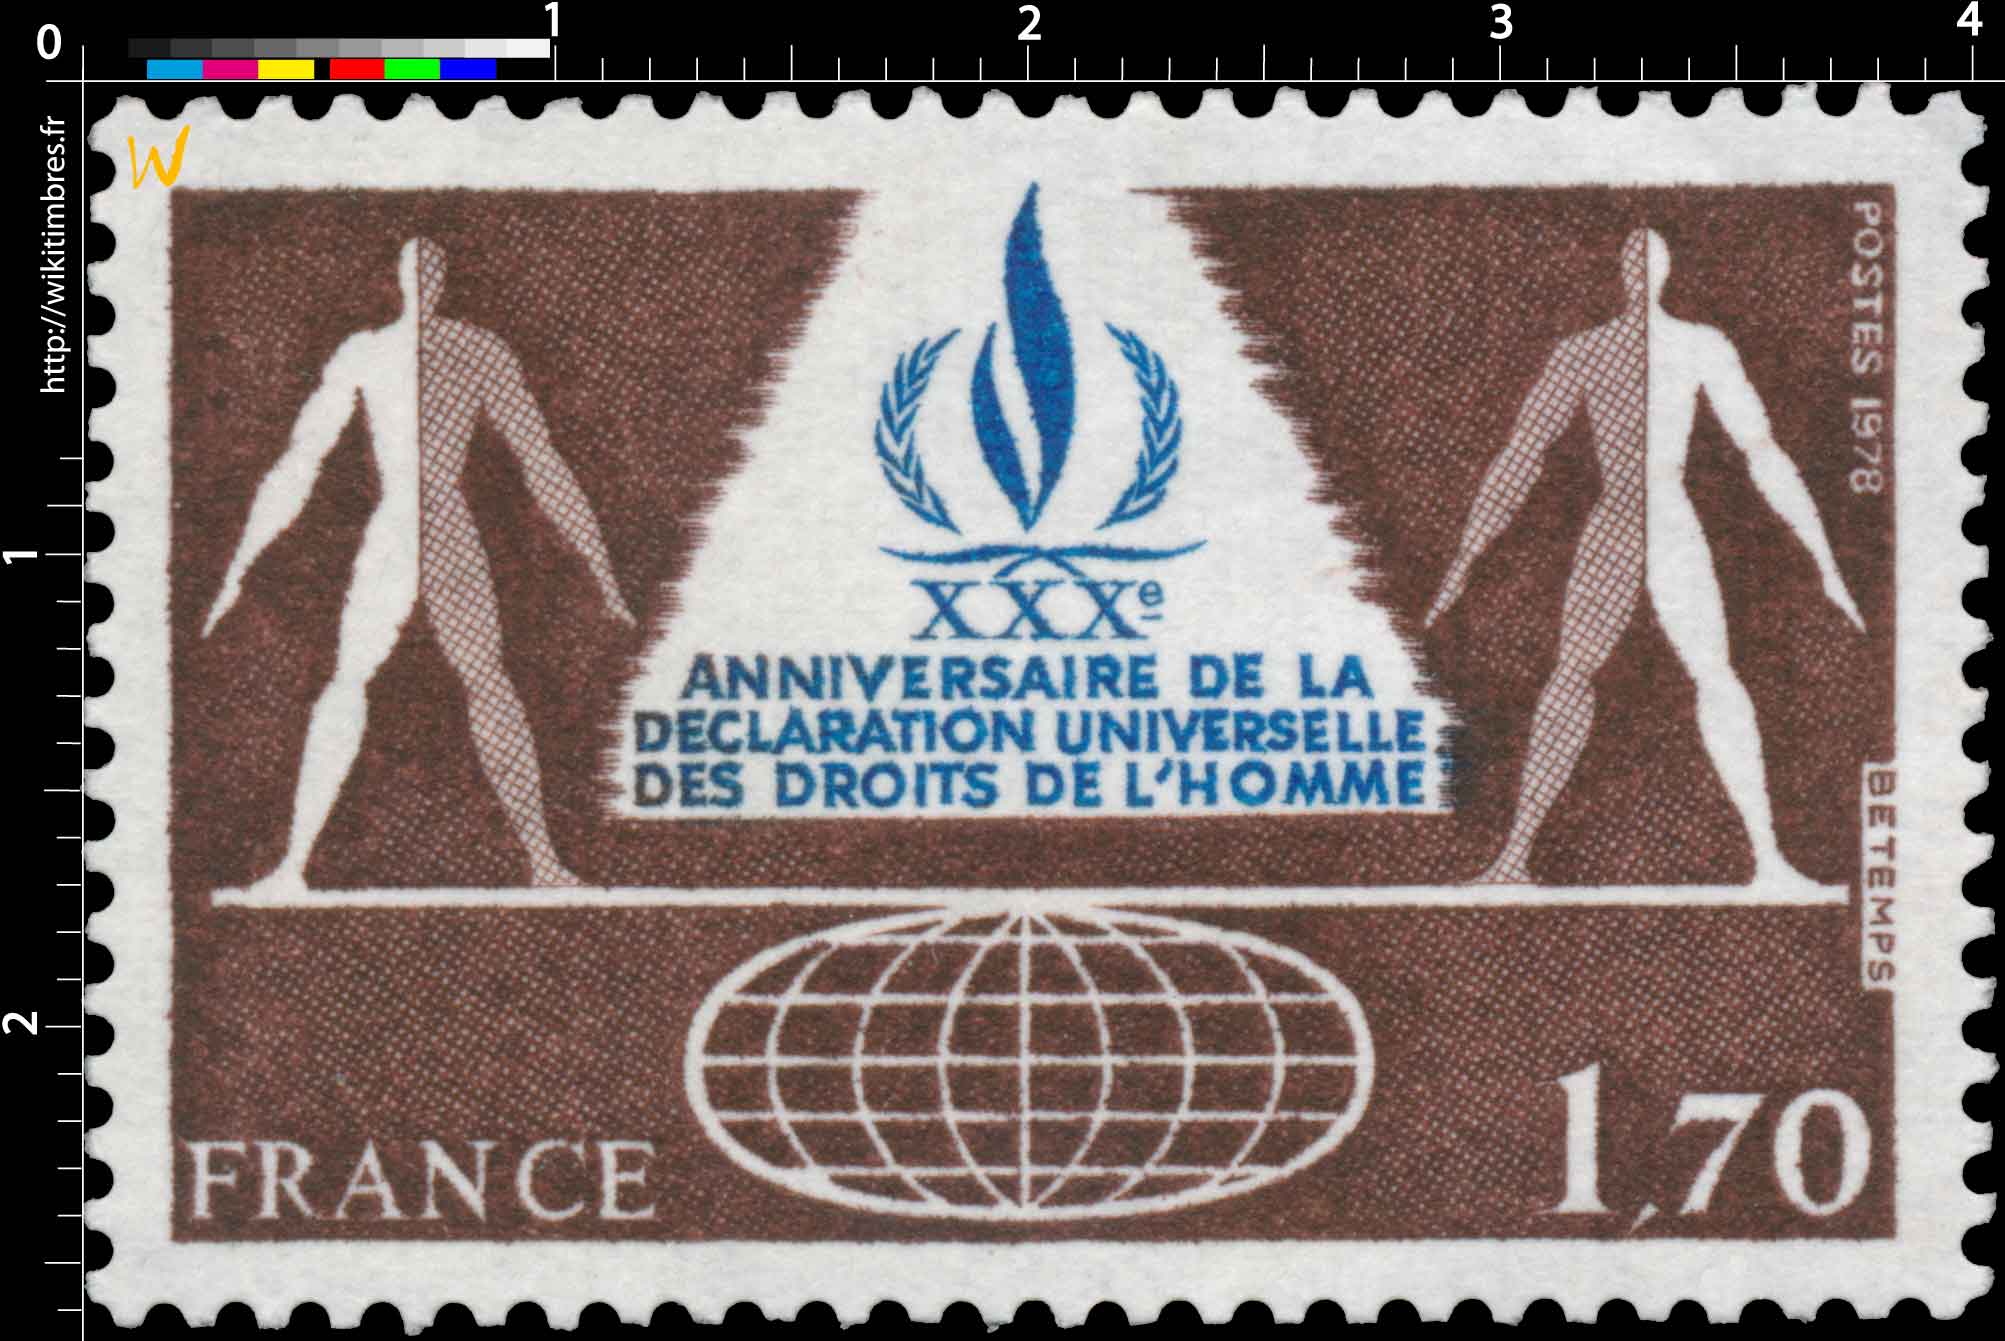 1978 XXXe ANNIVERSAIRE DE LA DÉCLARATION UNIVERSELLE DES DROITS DE L'HOMME